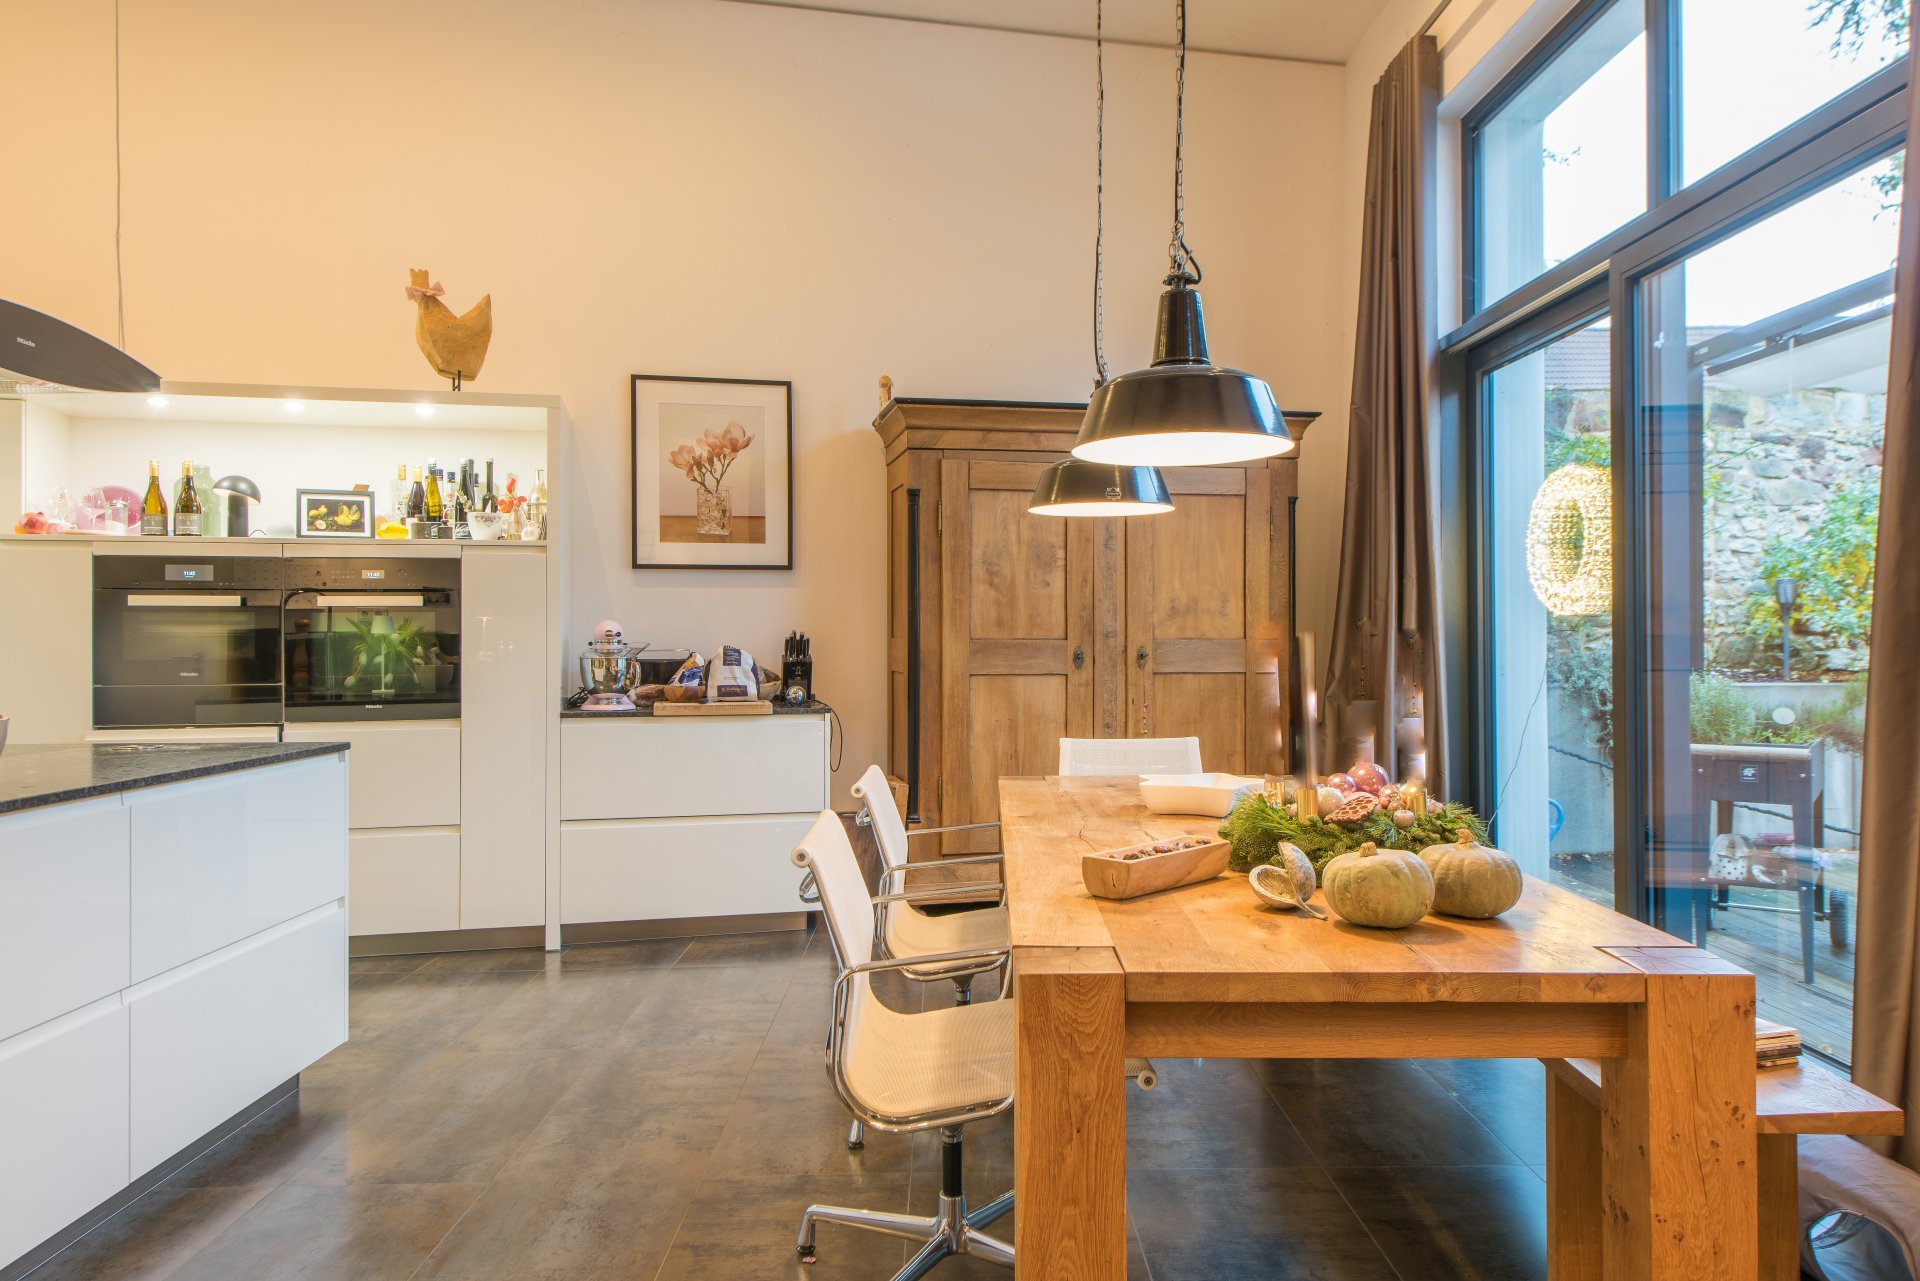 Bodentiefe, deckenhohe, raumbreite Fenster lassen viel Licht in den Raum mit deutlicher Überhöhe - Oliver Reifferscheid - Immobilienmakler Darmstadt